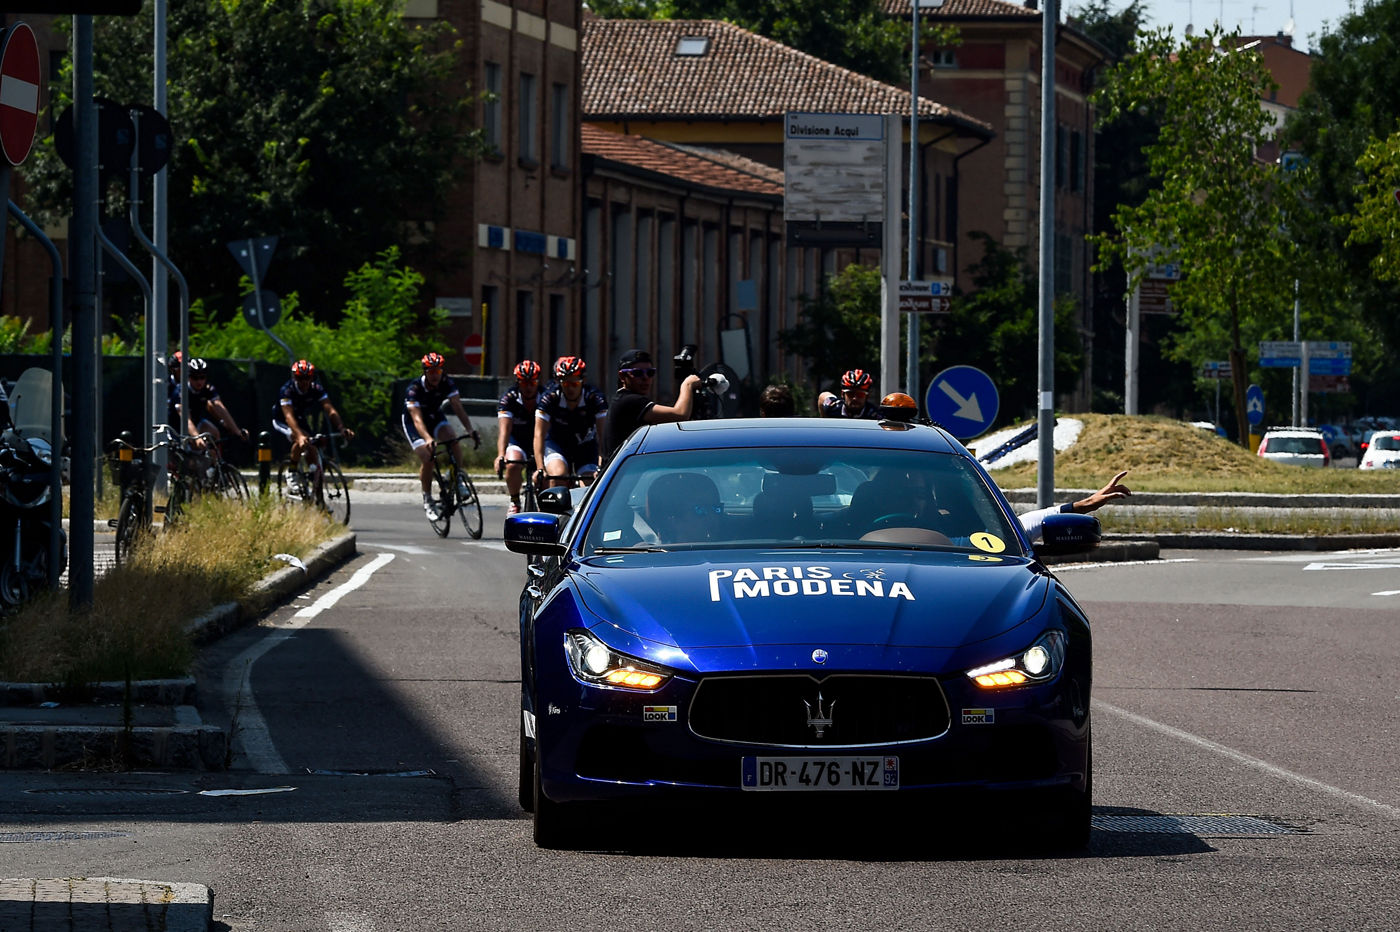 Vehículo delante de ciclistas vestidos con camiseta Maserati para el tour París-Modena en 2016